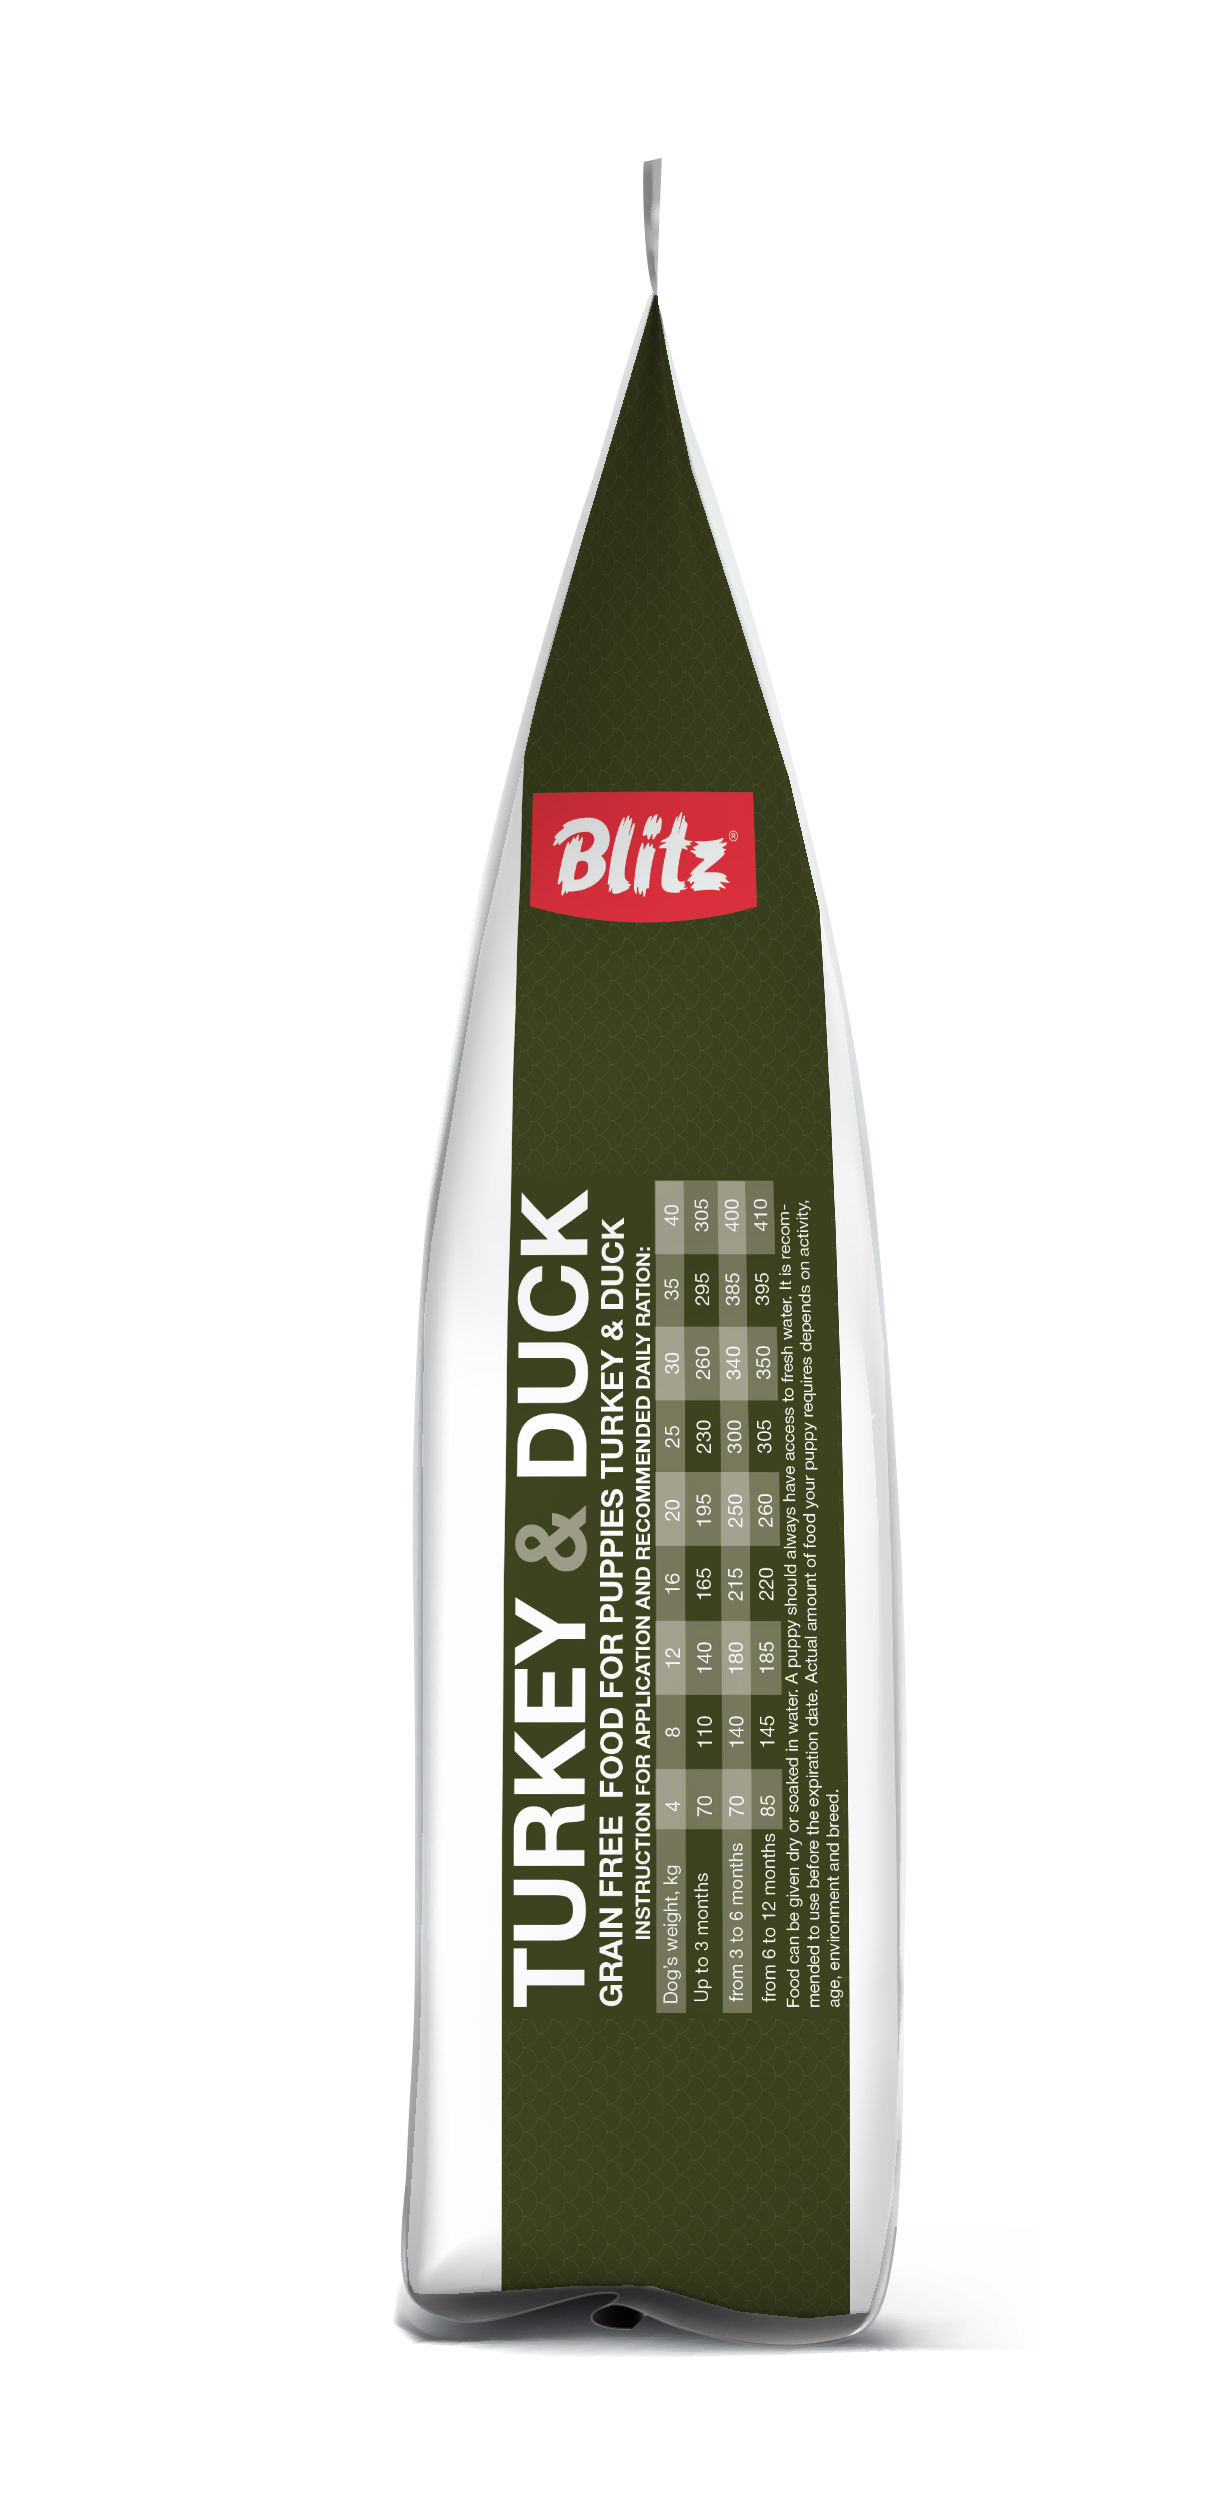 Blitz holistic индейка и утка — беззерновой сухой корм для щенков всех пород